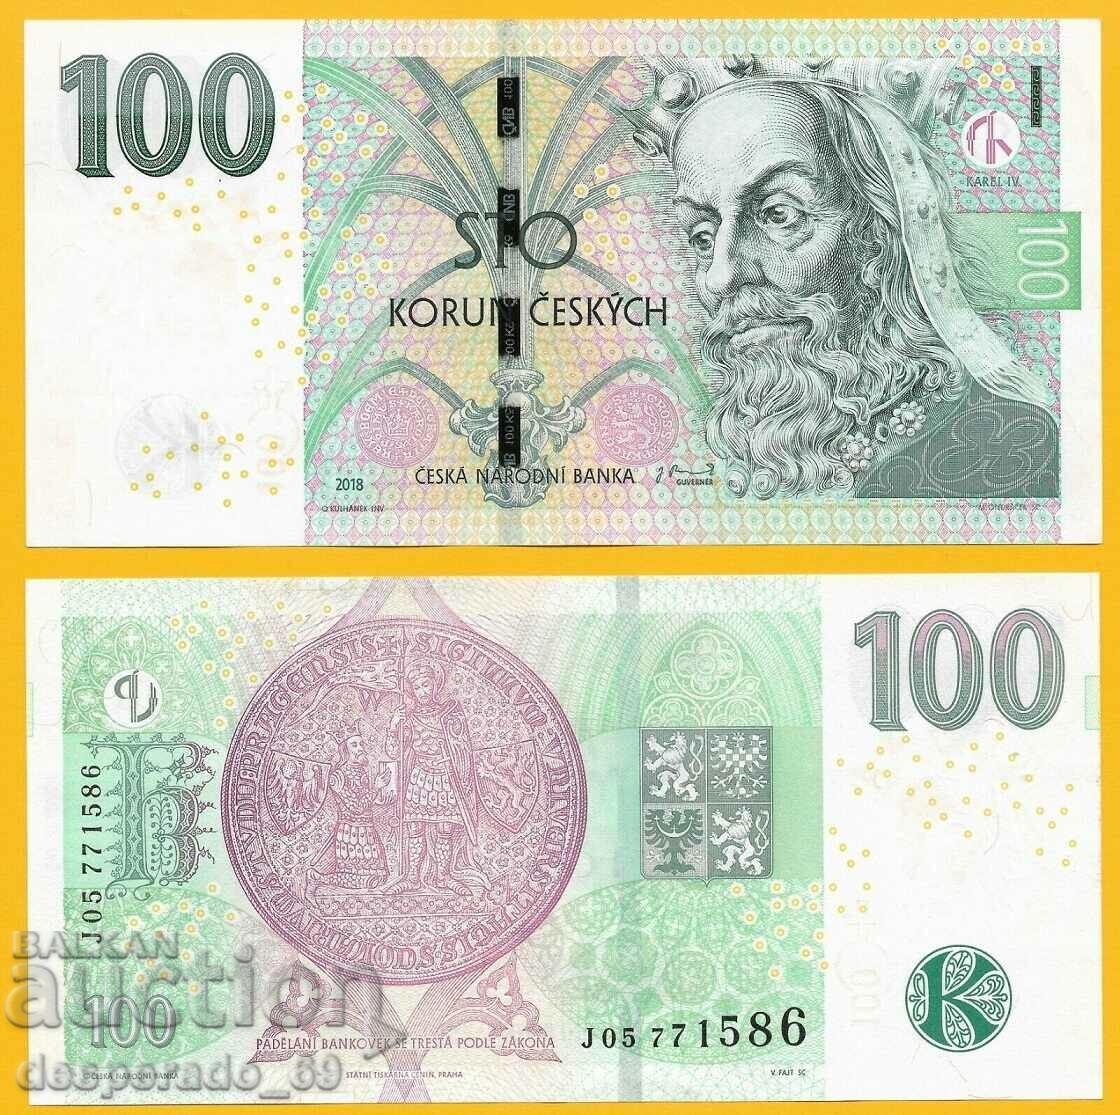 (¯`'•.¸ REPUBLICA CEHA 100 coroane 2018 UNC ¸.•'´¯)